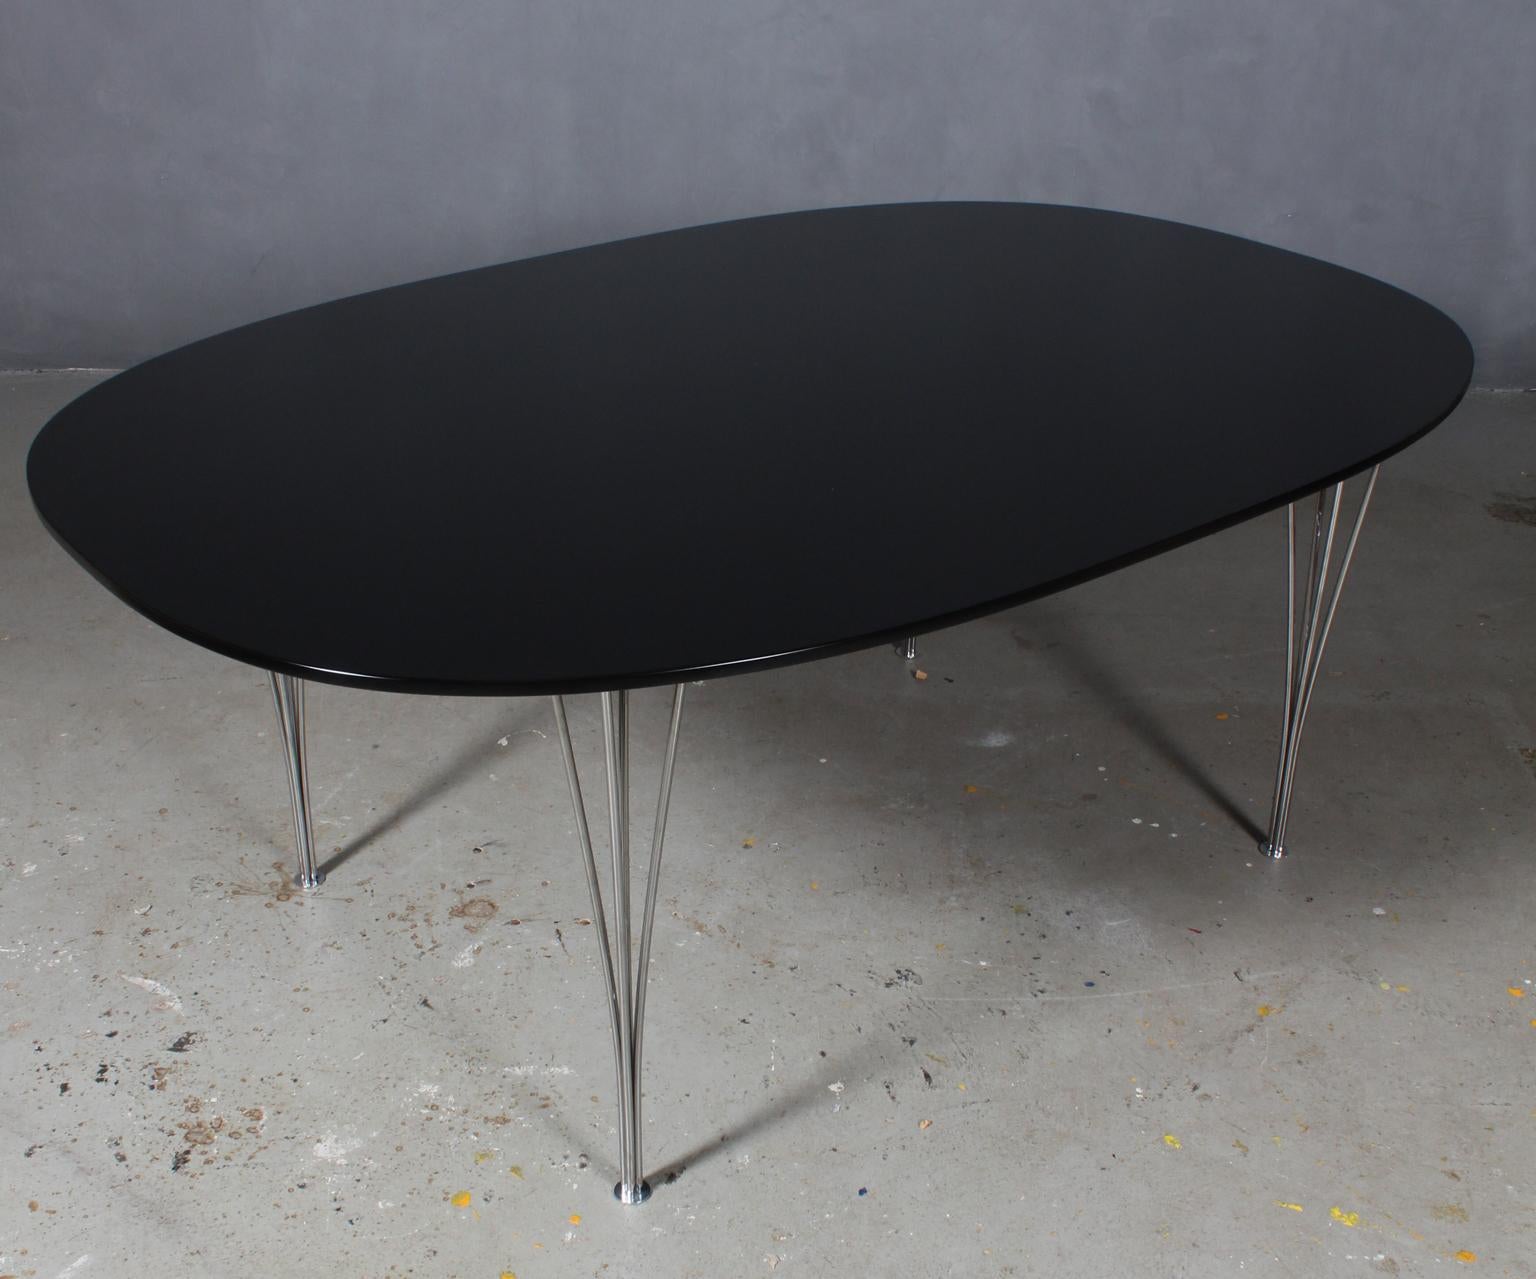 Piet Hein & Bruno Mathsson ellipse dining table new laquererd black.

Pieds en acier chromé.

Fabriqué par Fritz Hansen.
  